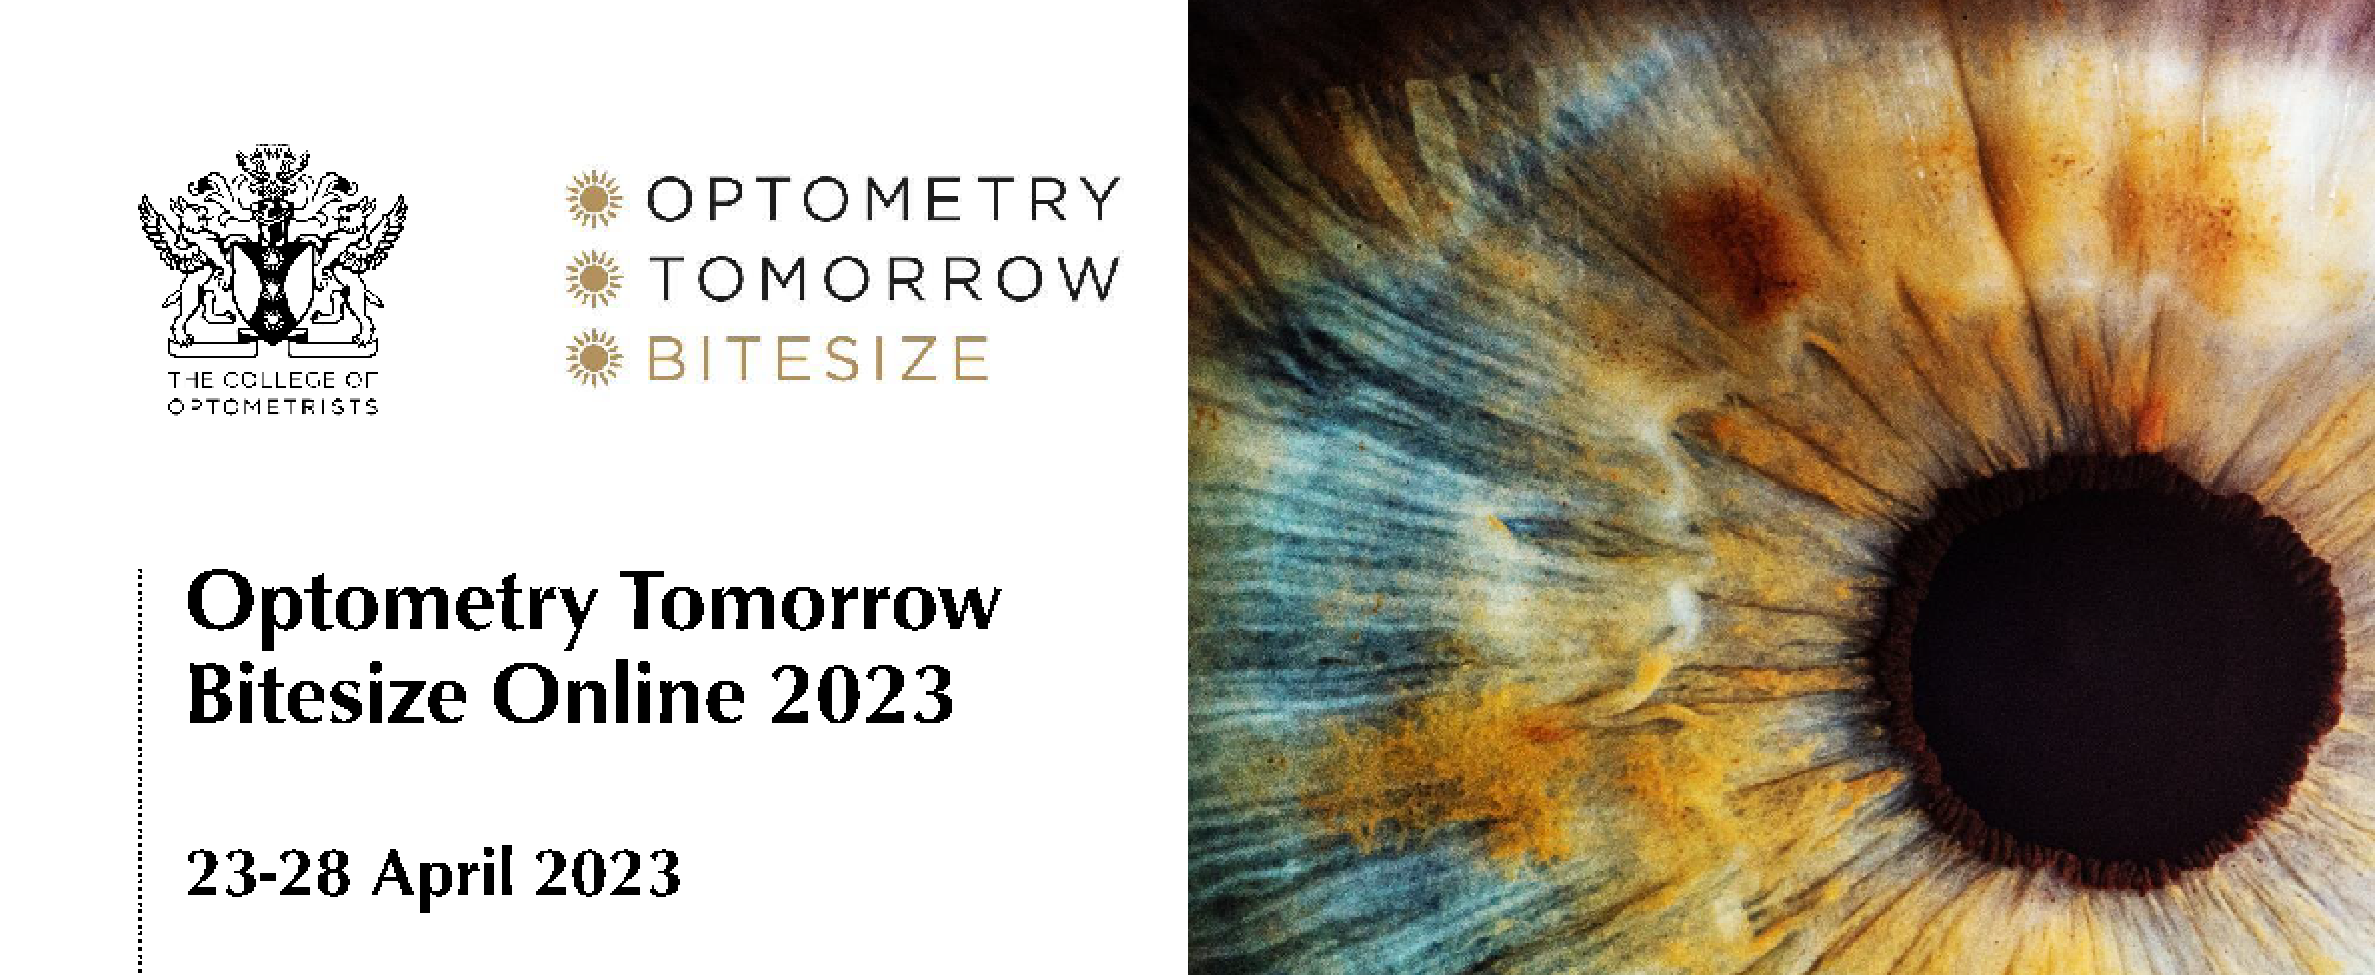 Optometry Tomorrow Bitesize 2023